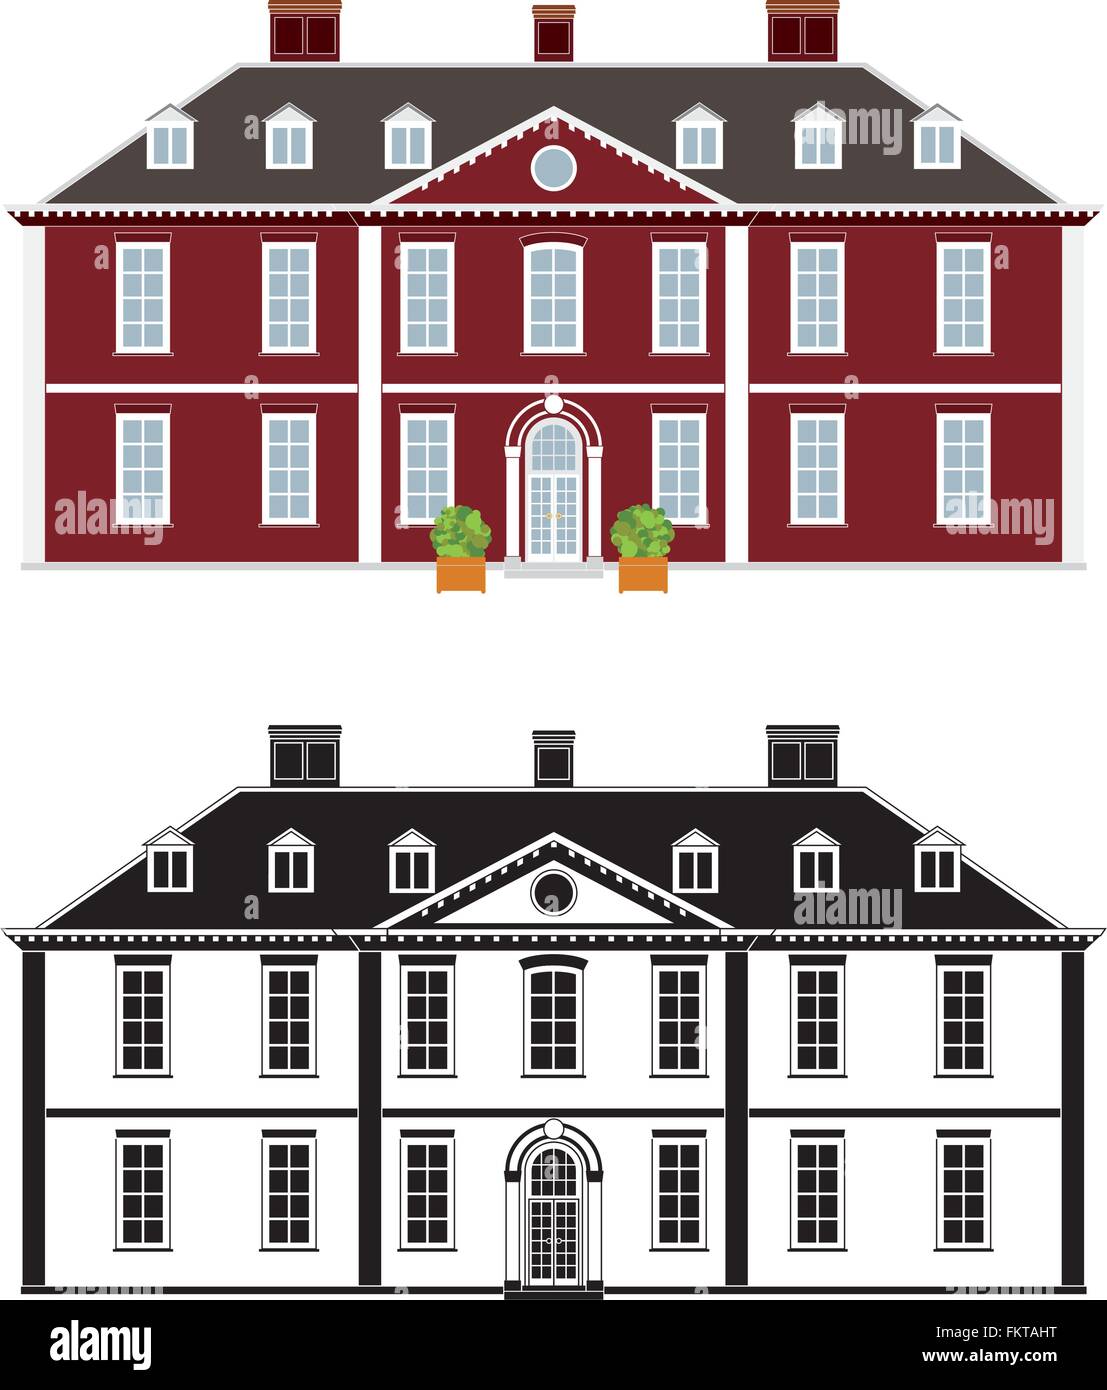 Hôtel particulier du 18ème siècle en style Queen Anne, couleur et monochrome noir sur différentes couches Illustration de Vecteur